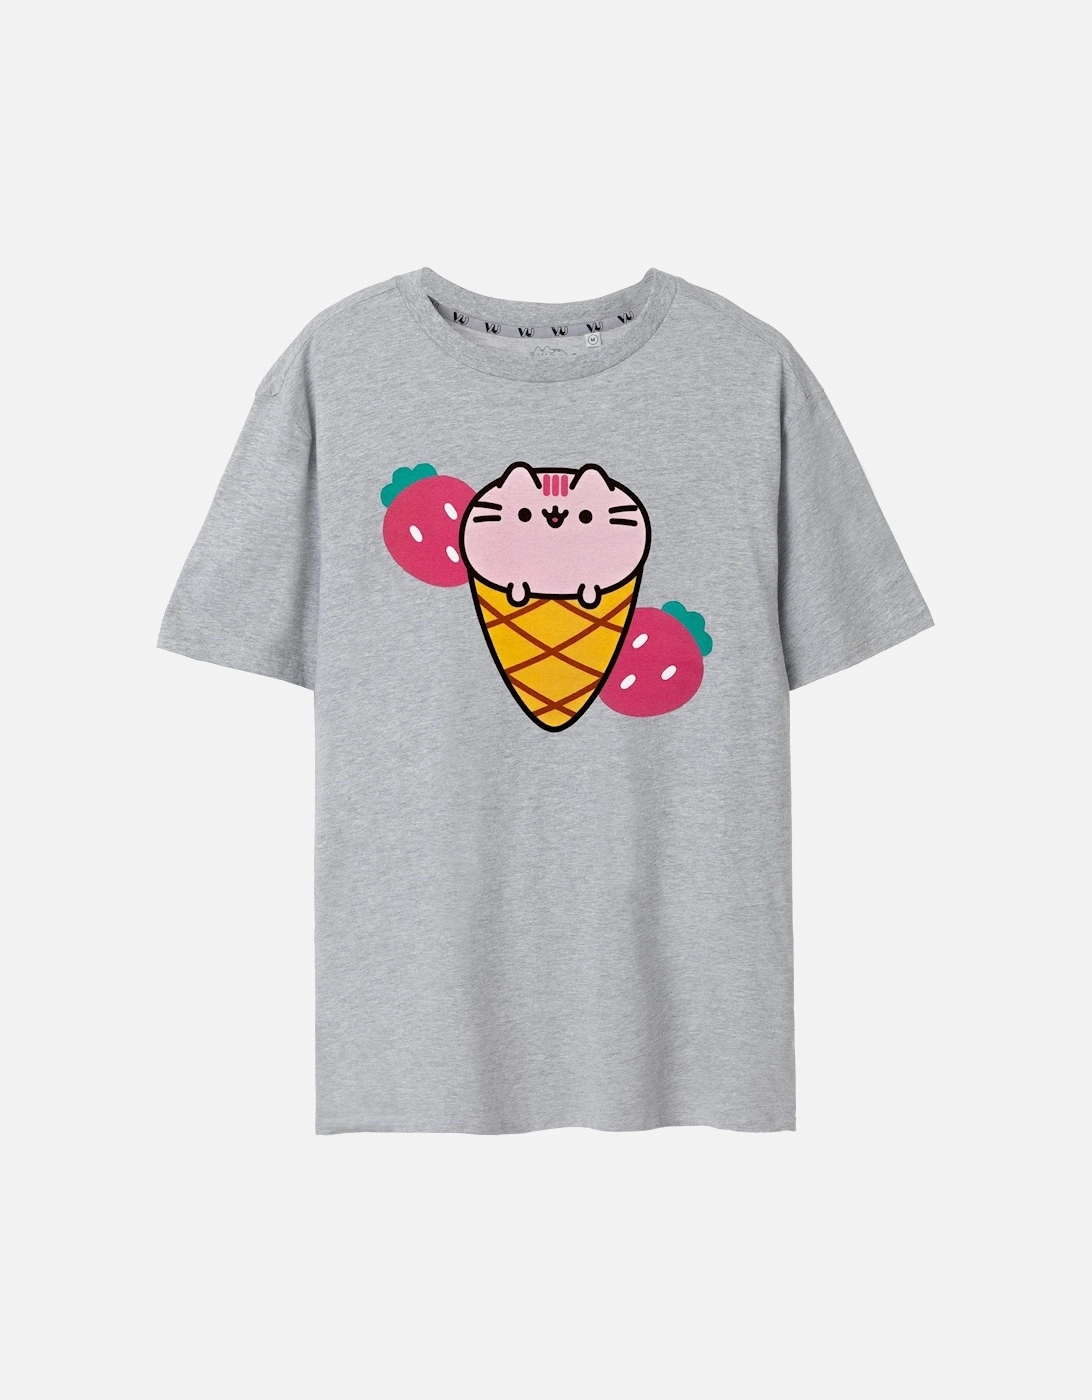 Womens/Ladies Ice Cream Short-Sleeved T-Shirt, 4 of 3